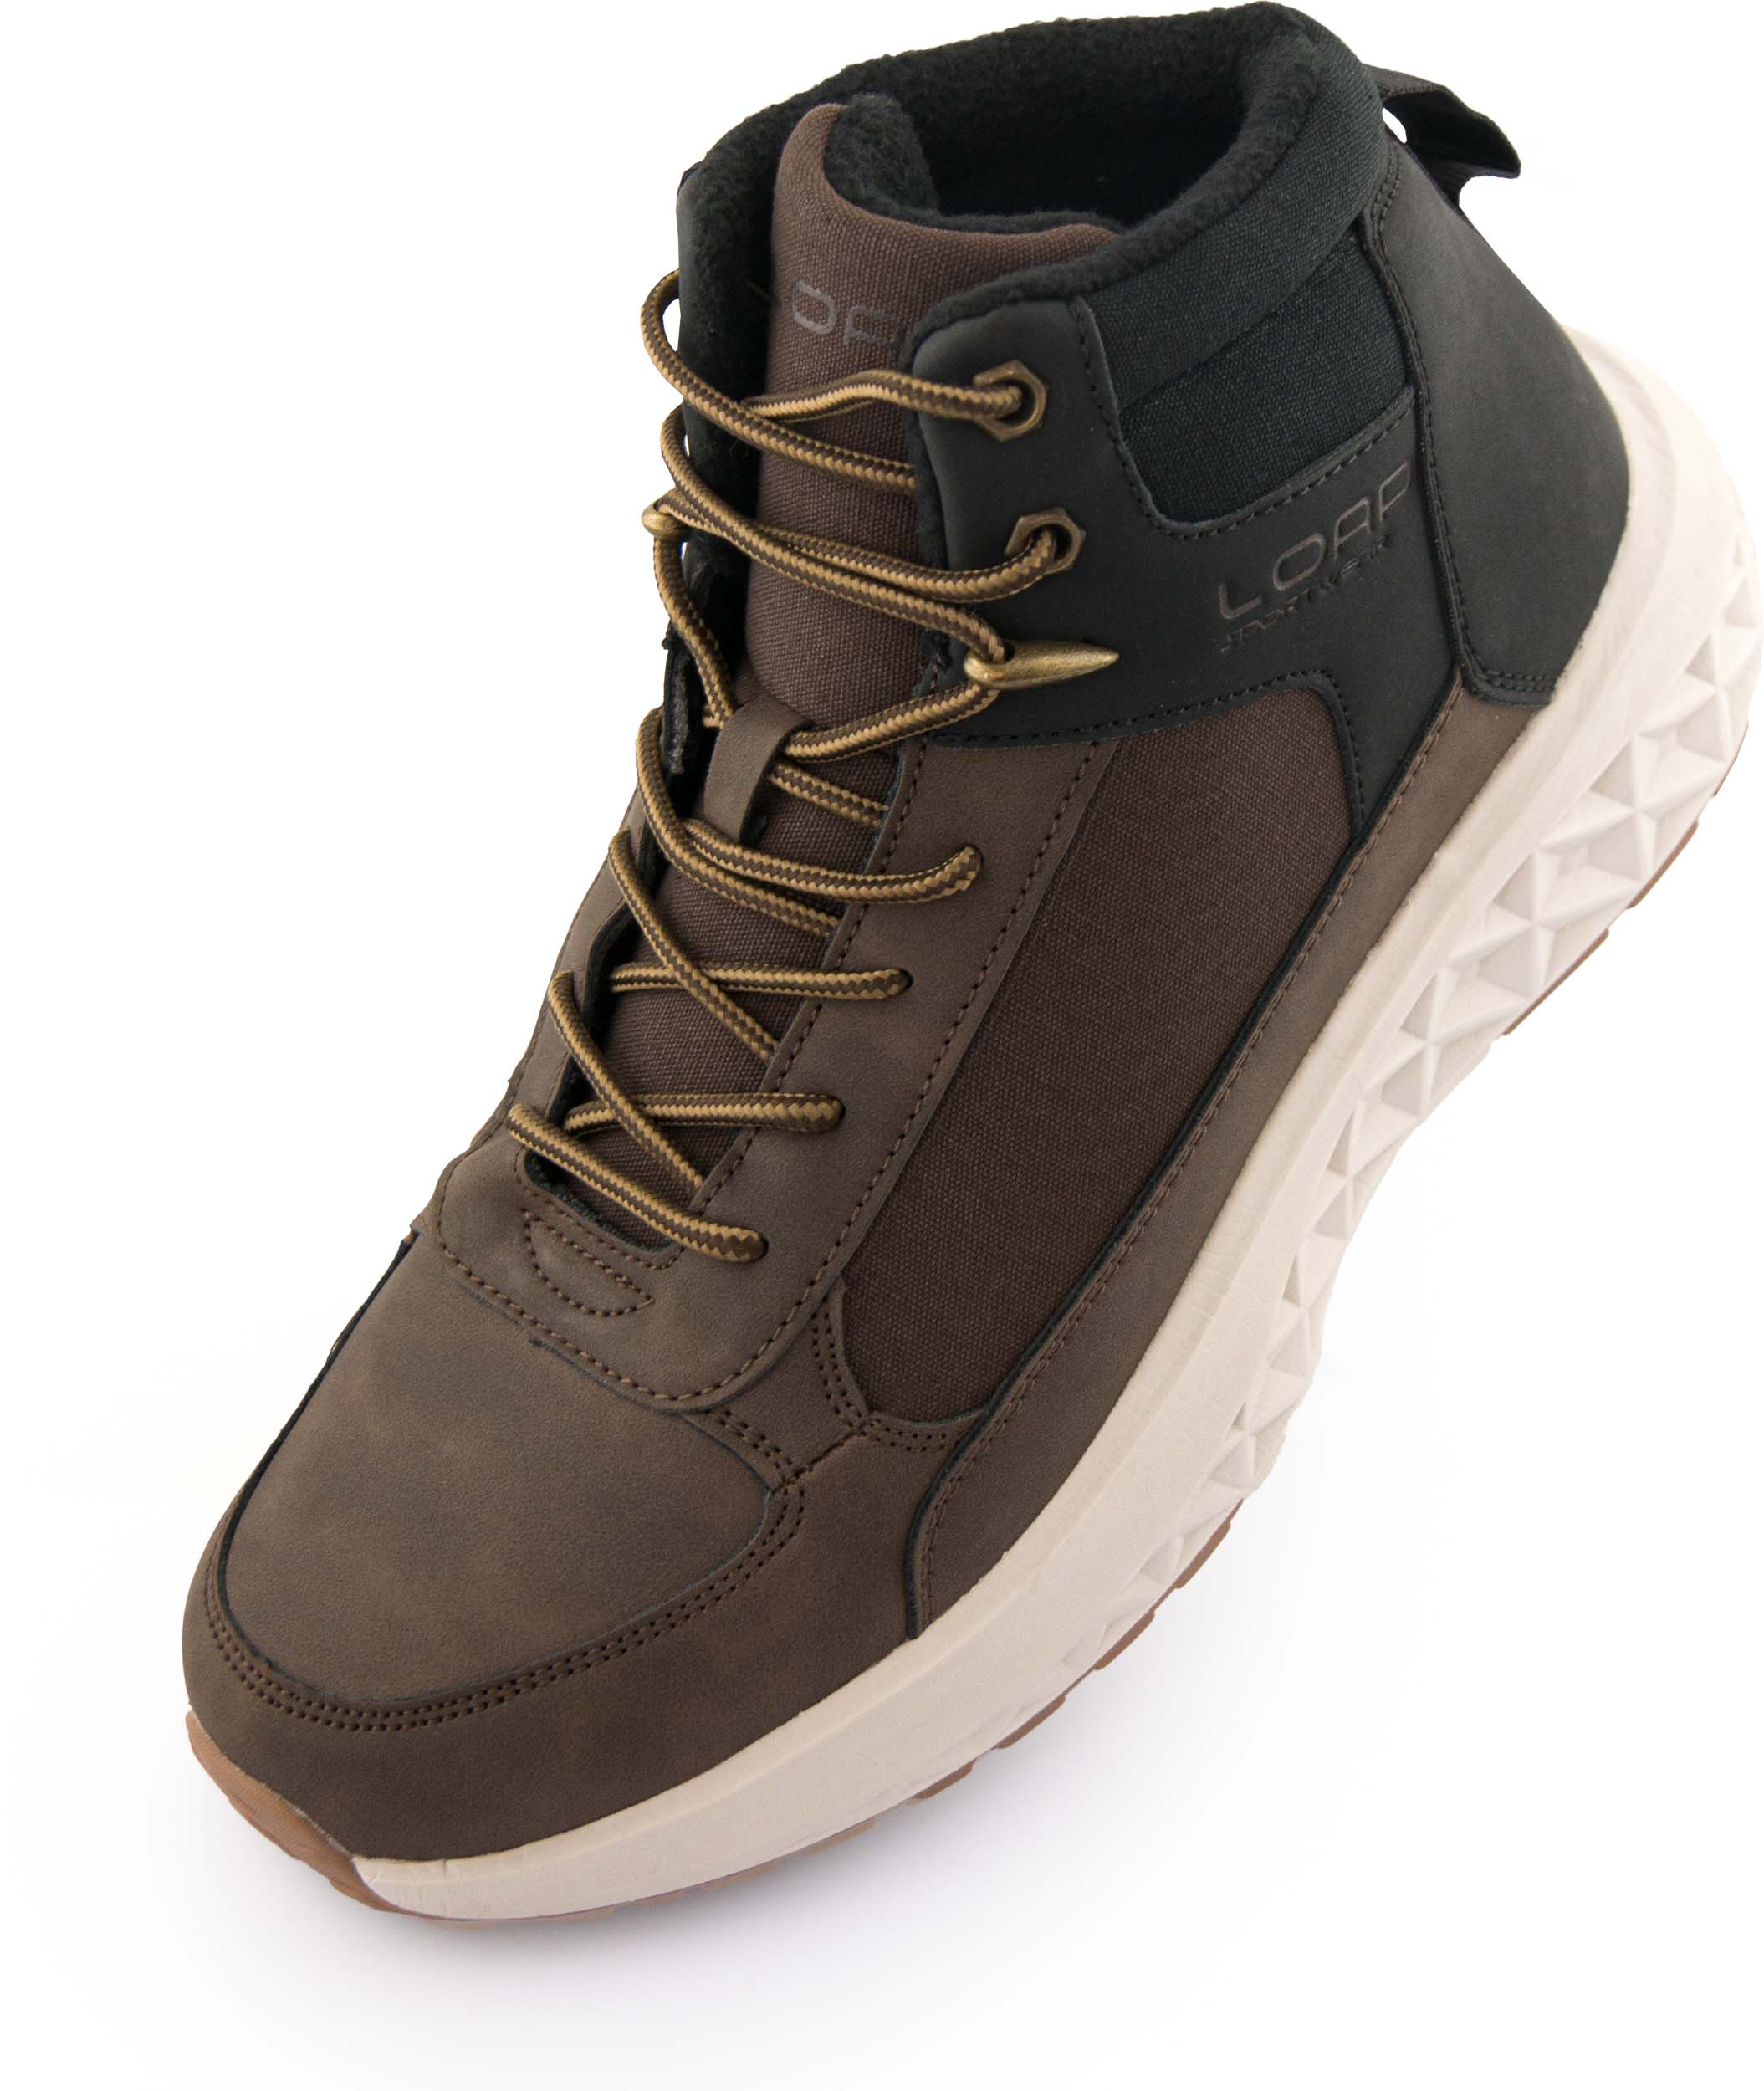 Pánské zimní boty LOAP WESTER brown|42